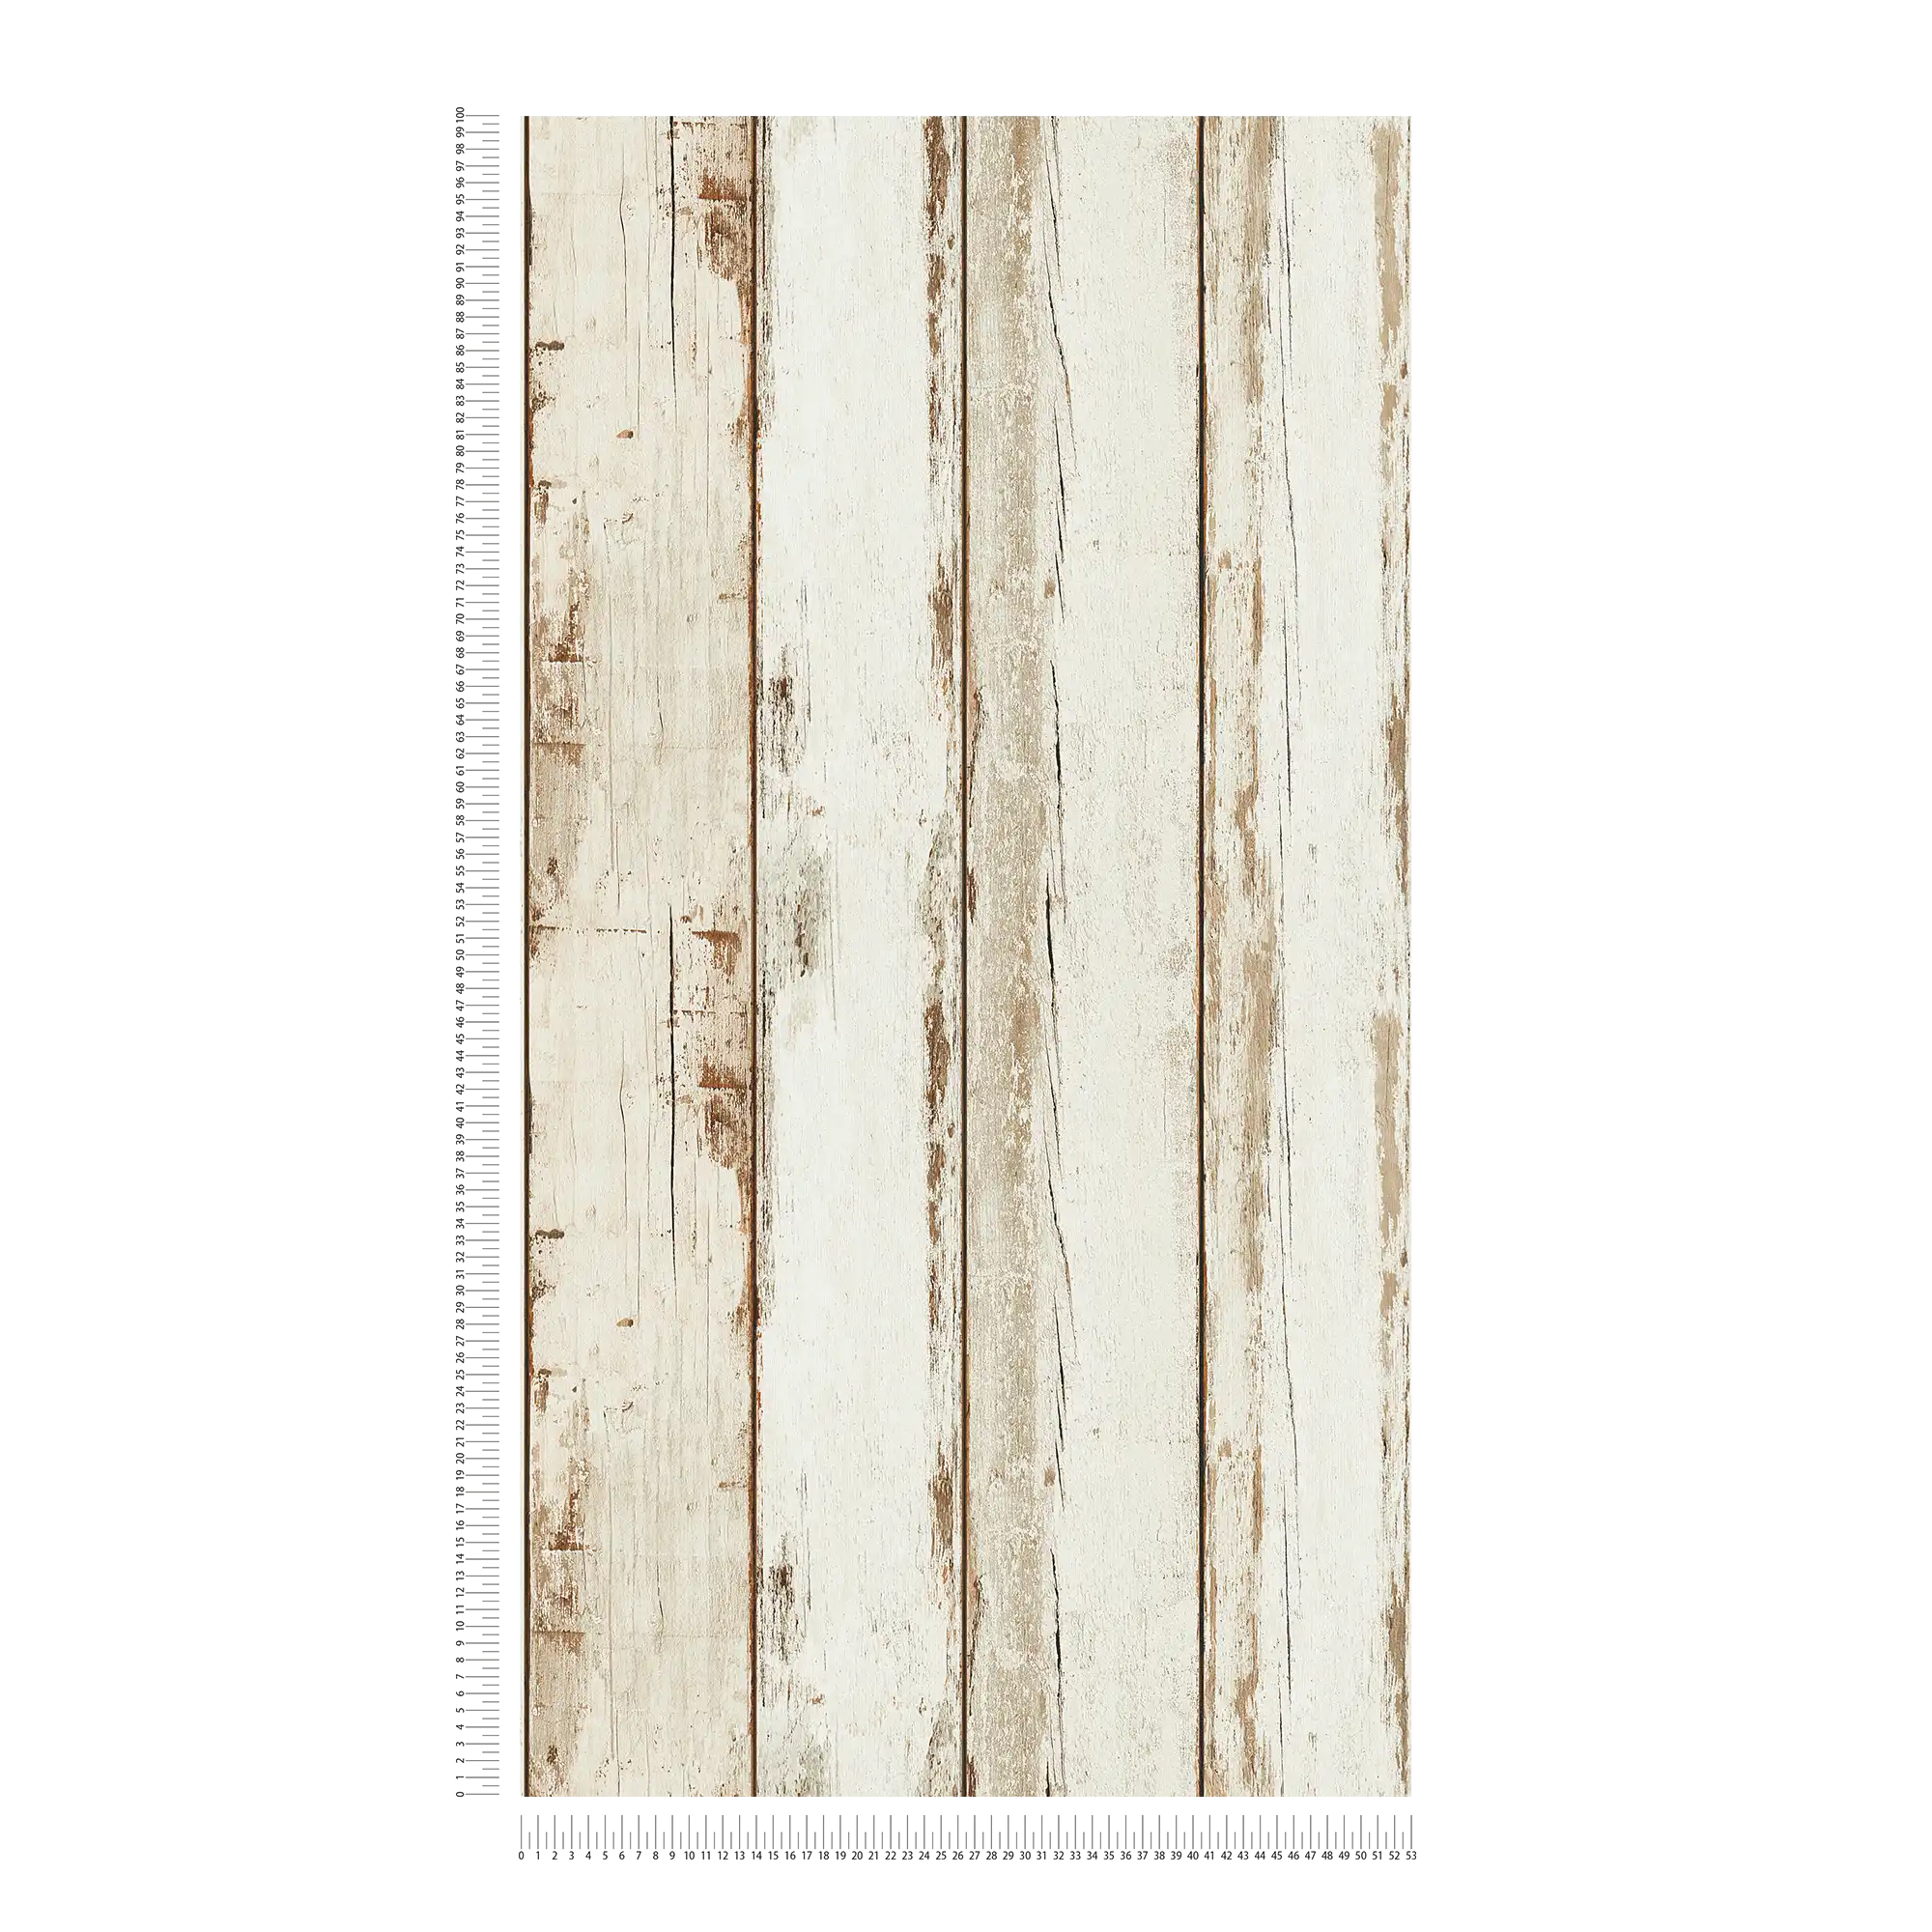             Carta da parati in legno vintage, aspetto usato, stile country rustico - crema, marrone
        